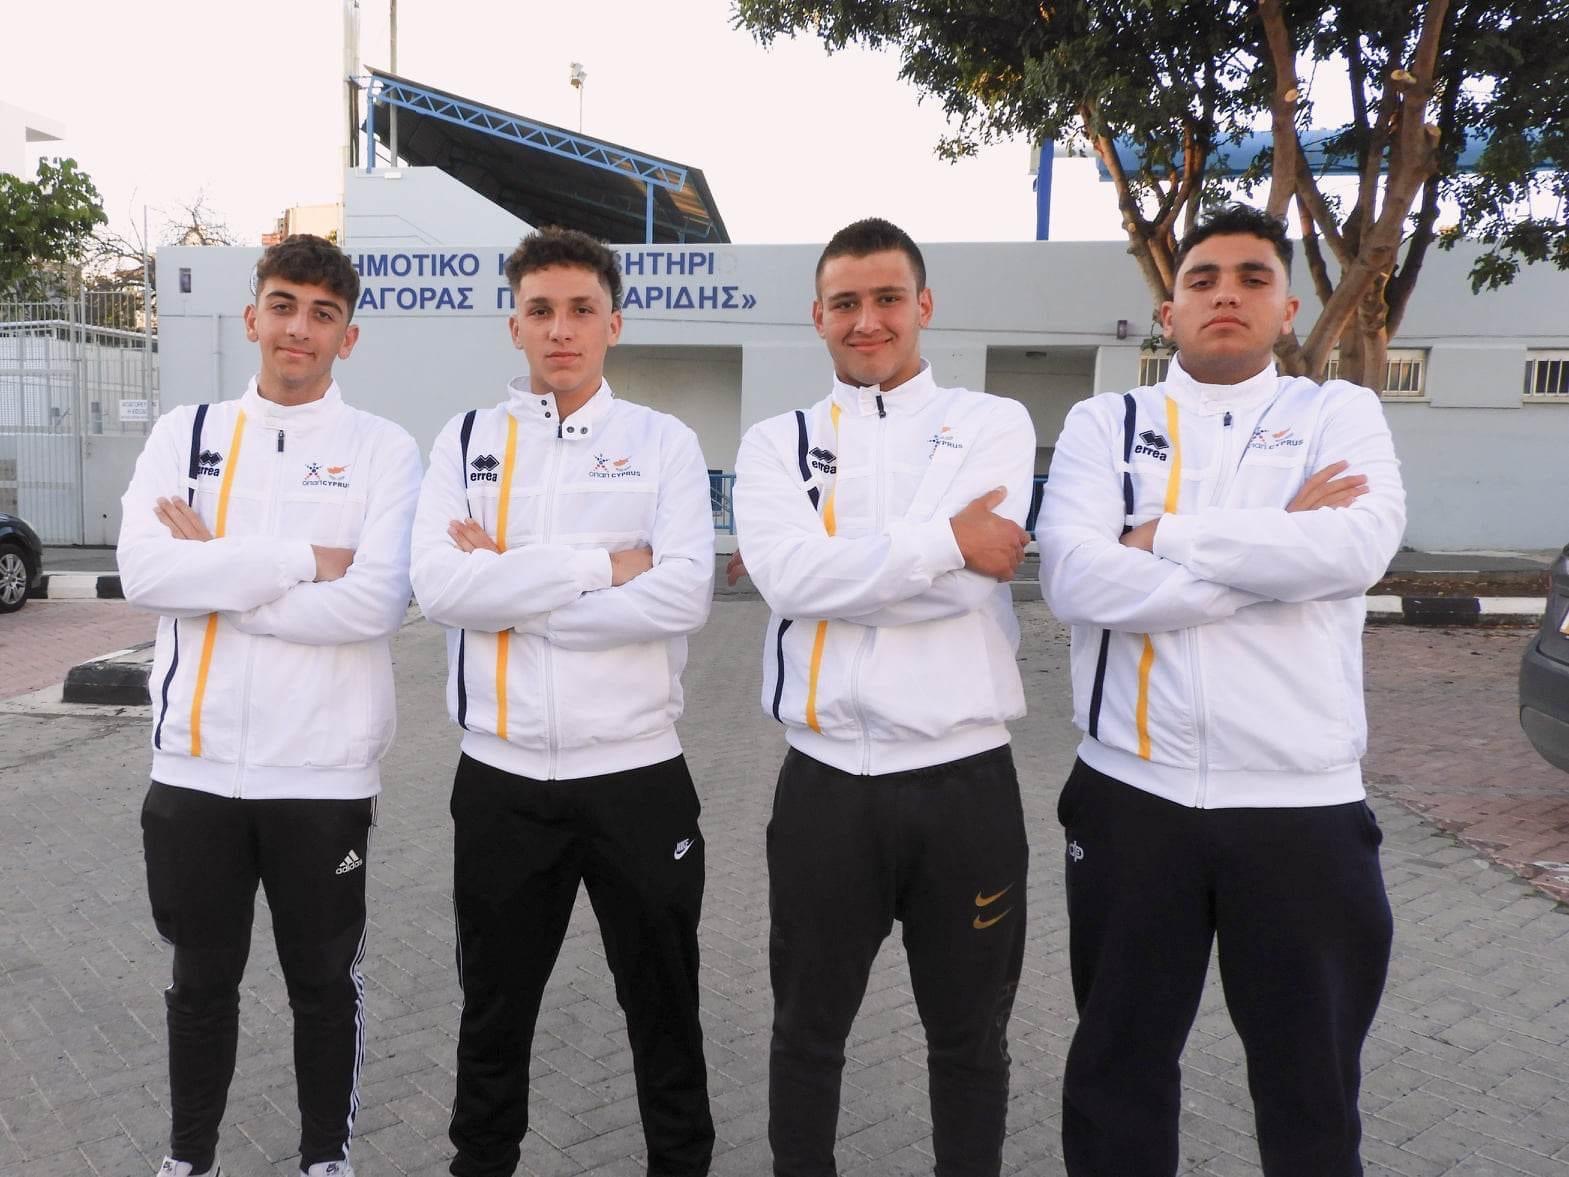 Ευχές στους αθλητές της Εθνικής ομάδας υδατοσφαίρισης: Στη Τιφλίδα για τους προκριματικούς